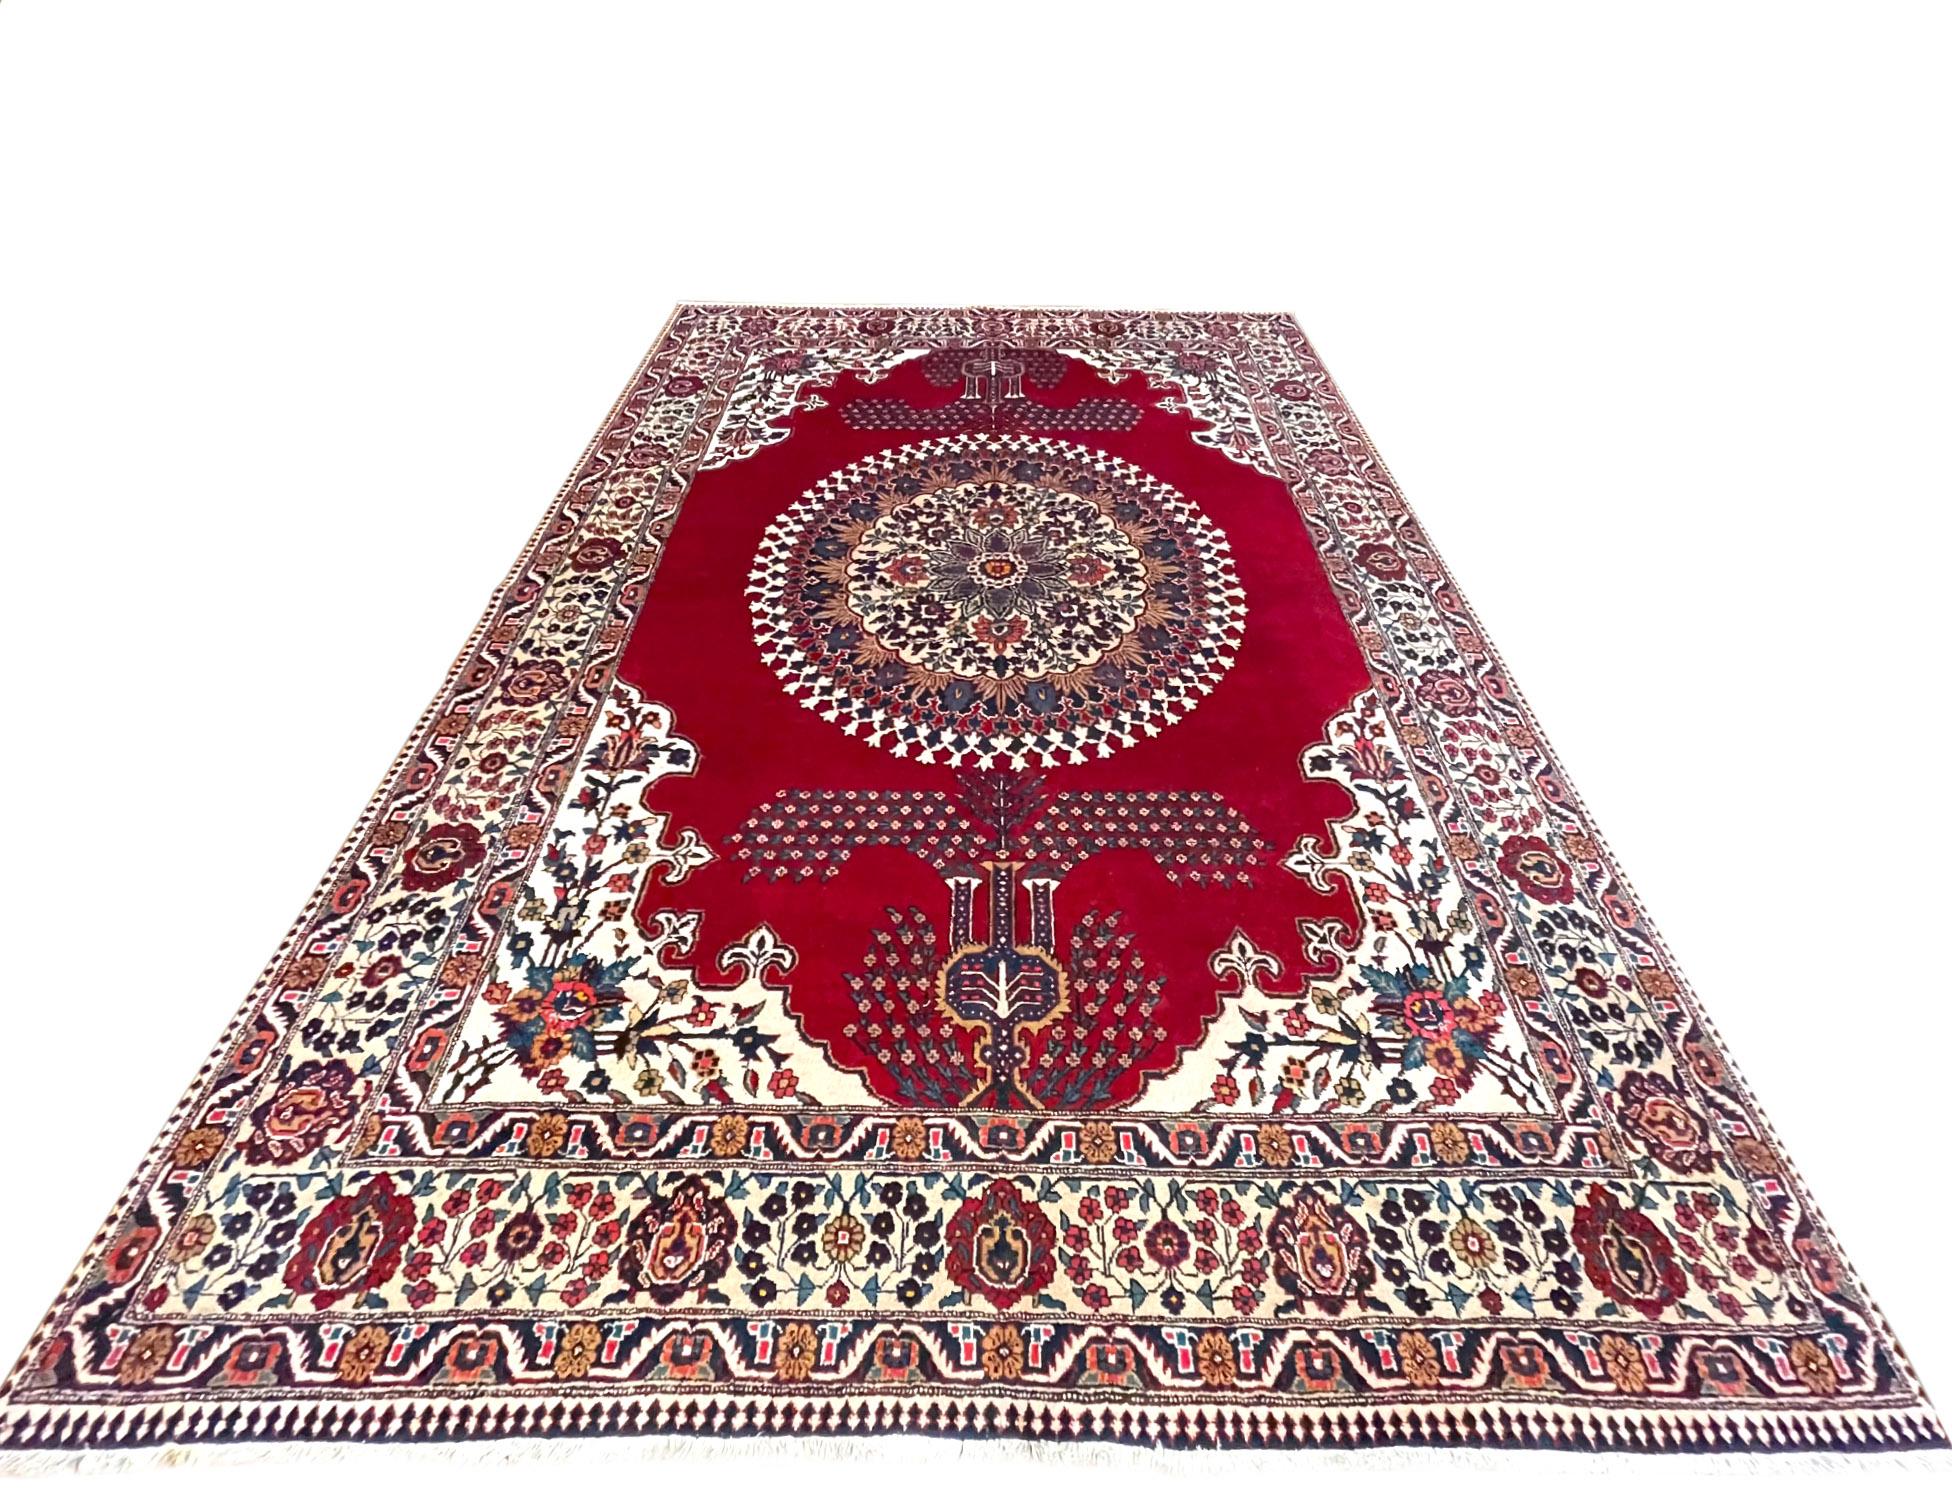 Ce tapis persan Tabriz-Heriz, les tapis Heriz sont des tapis persans de la région de Heriz, Azerbaïdjan oriental au nord-ouest de l'Iran, au nord-est de Tabriz. Ce tapis a des poils en laine et une base en coton. Ce tapis est semi-floral avec un